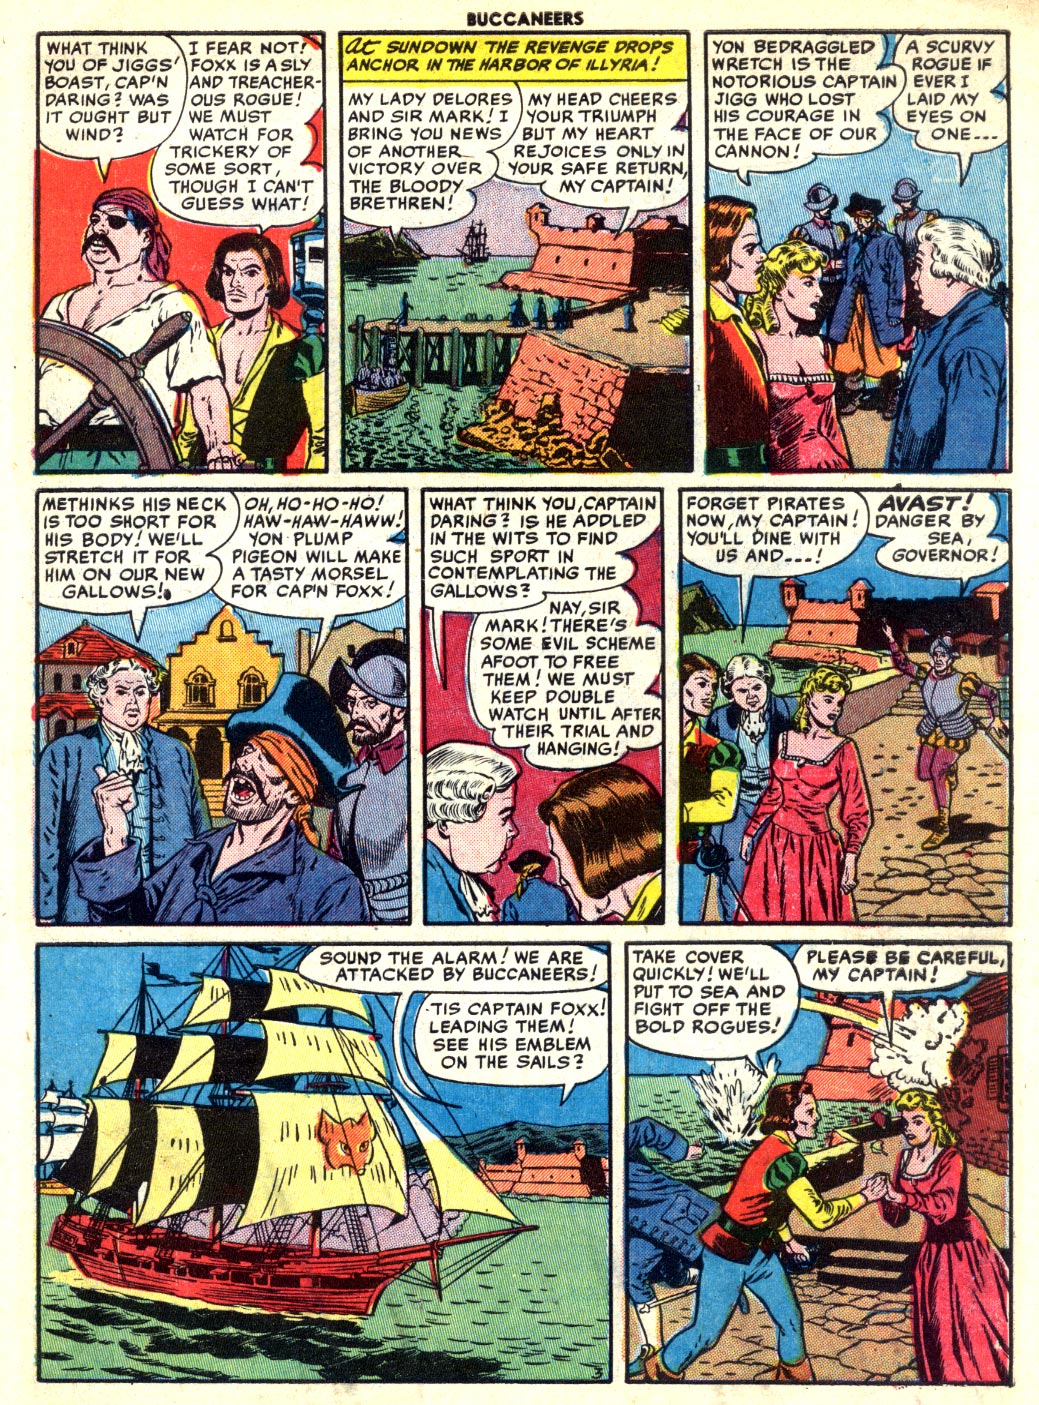 Read online Buccaneers comic -  Issue #27 - 5